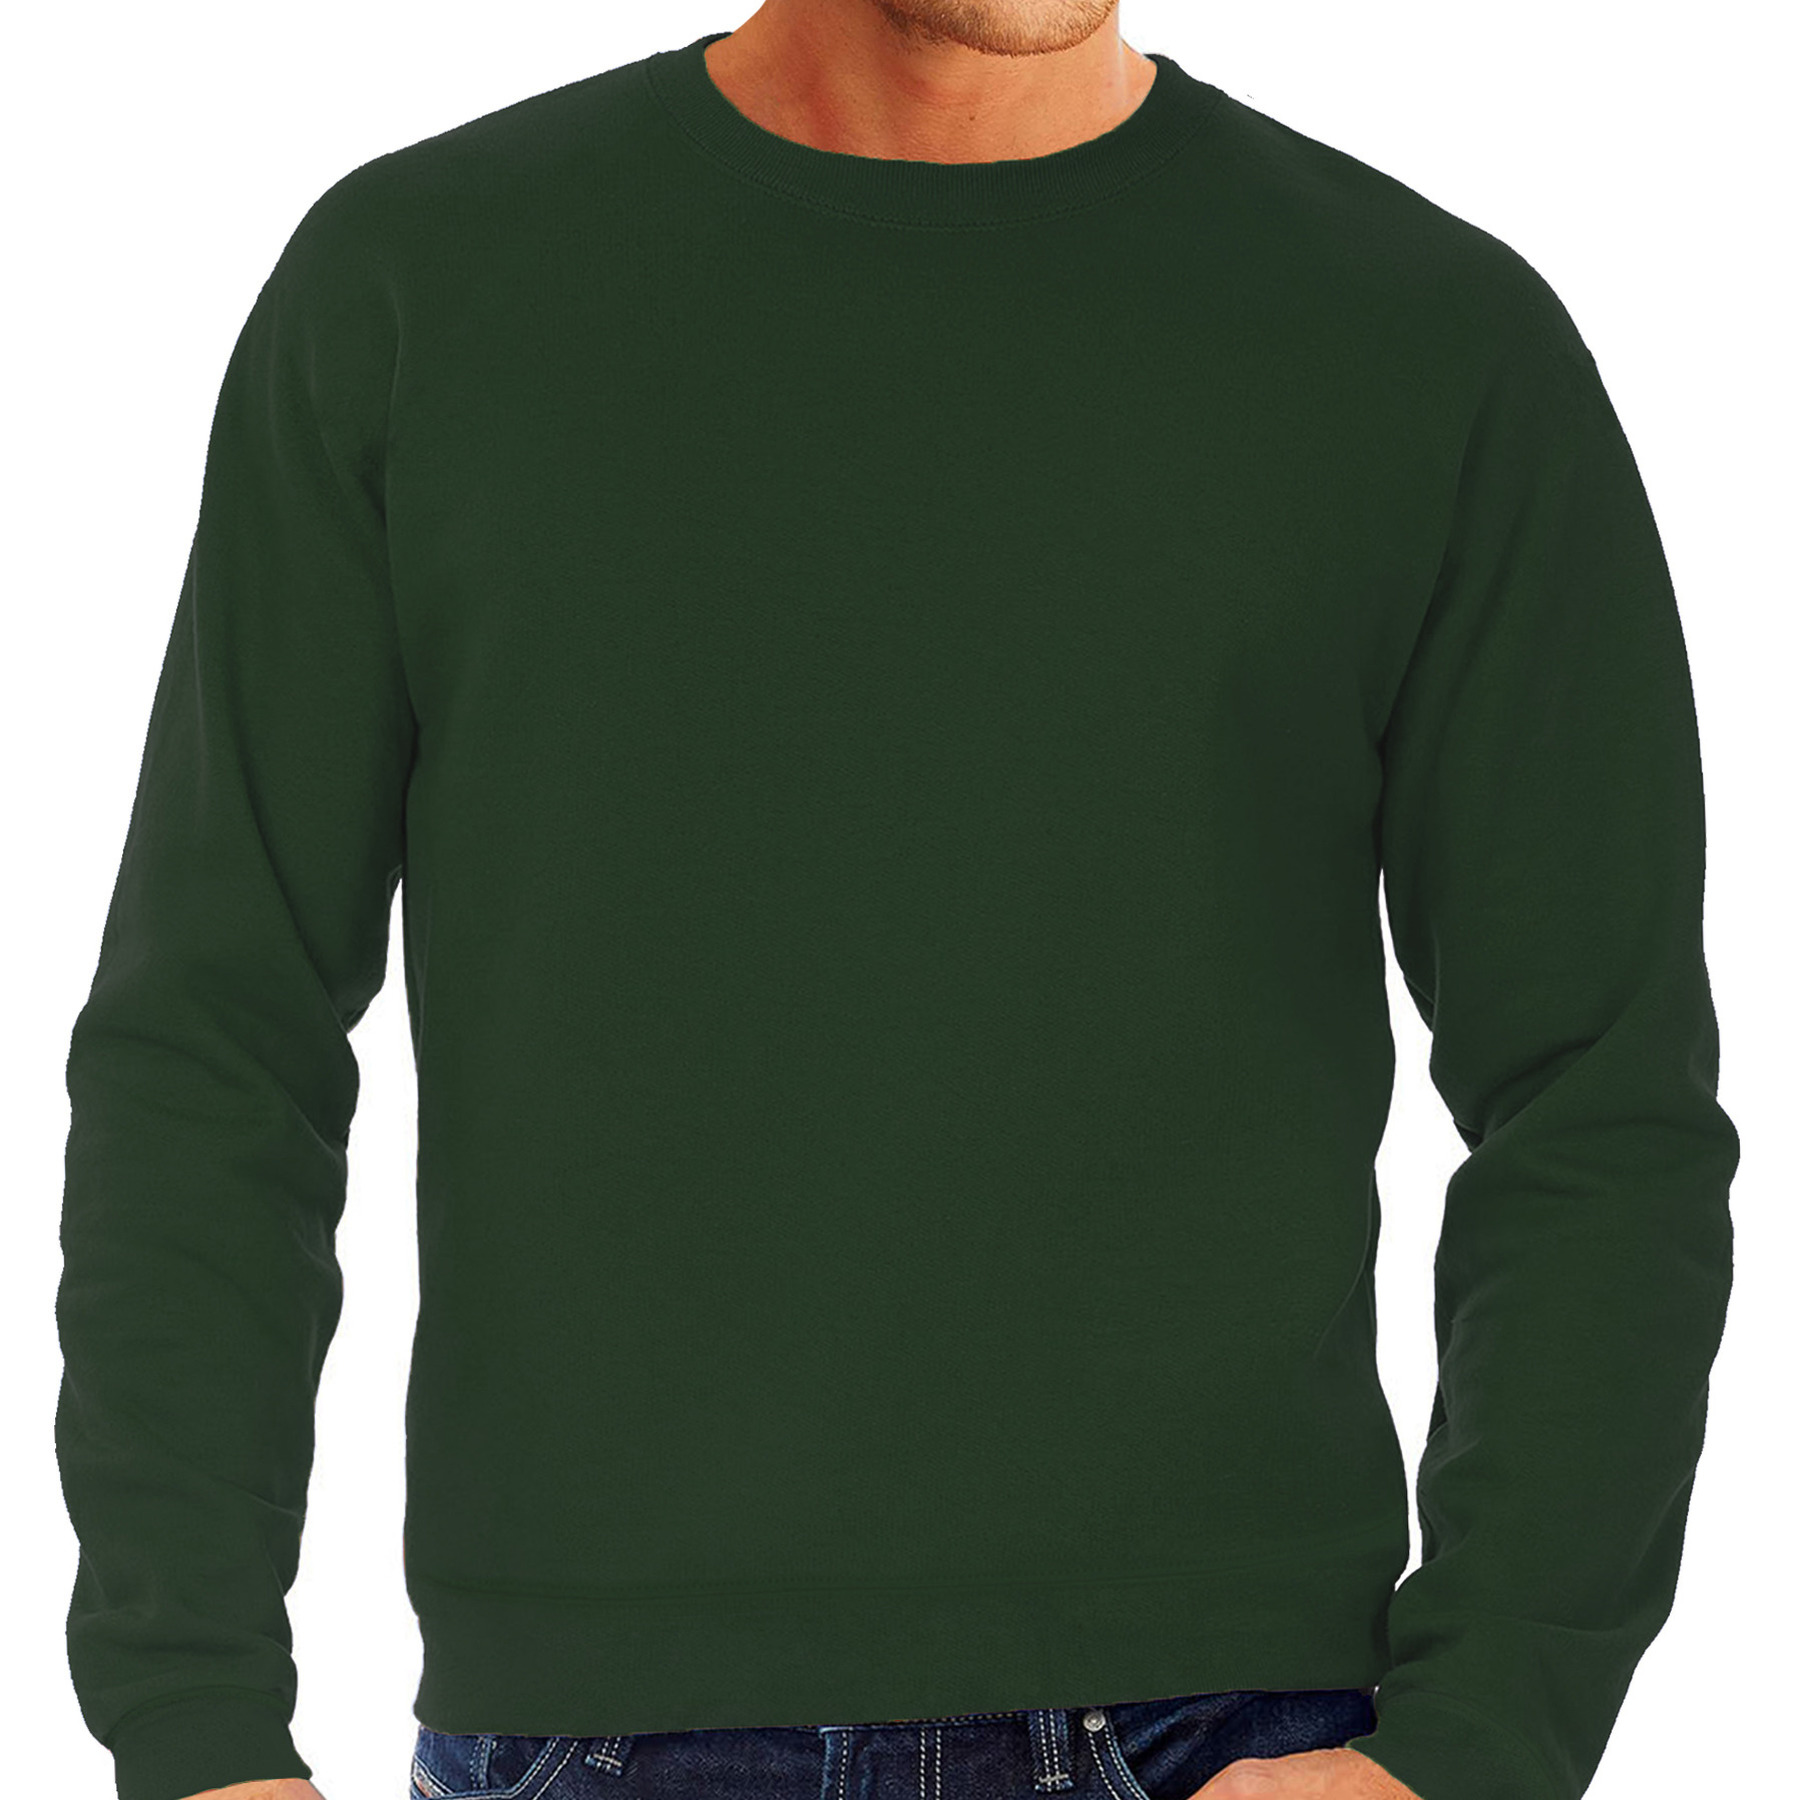 Grote maten sweater-sweatshirt trui groen met ronde hals voor mannen